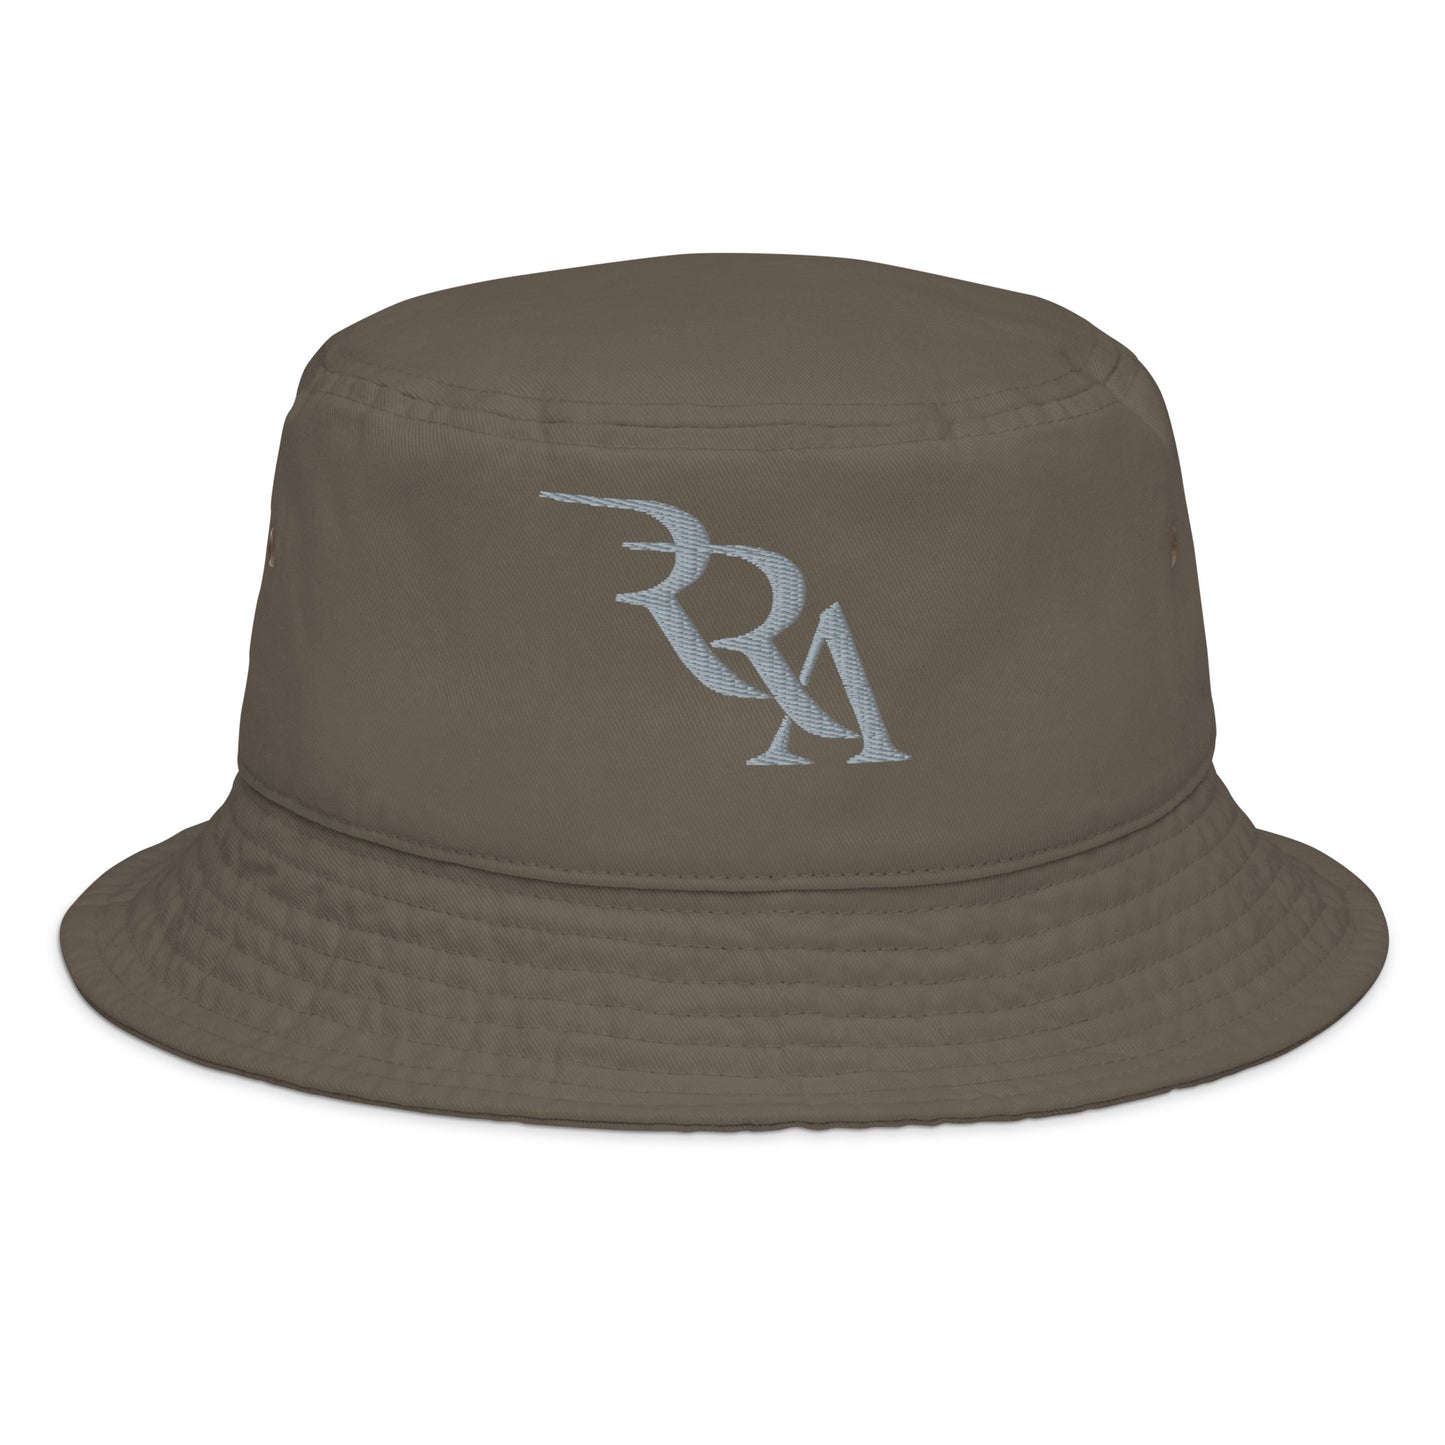 RRA - Silver Fashion bucket hat